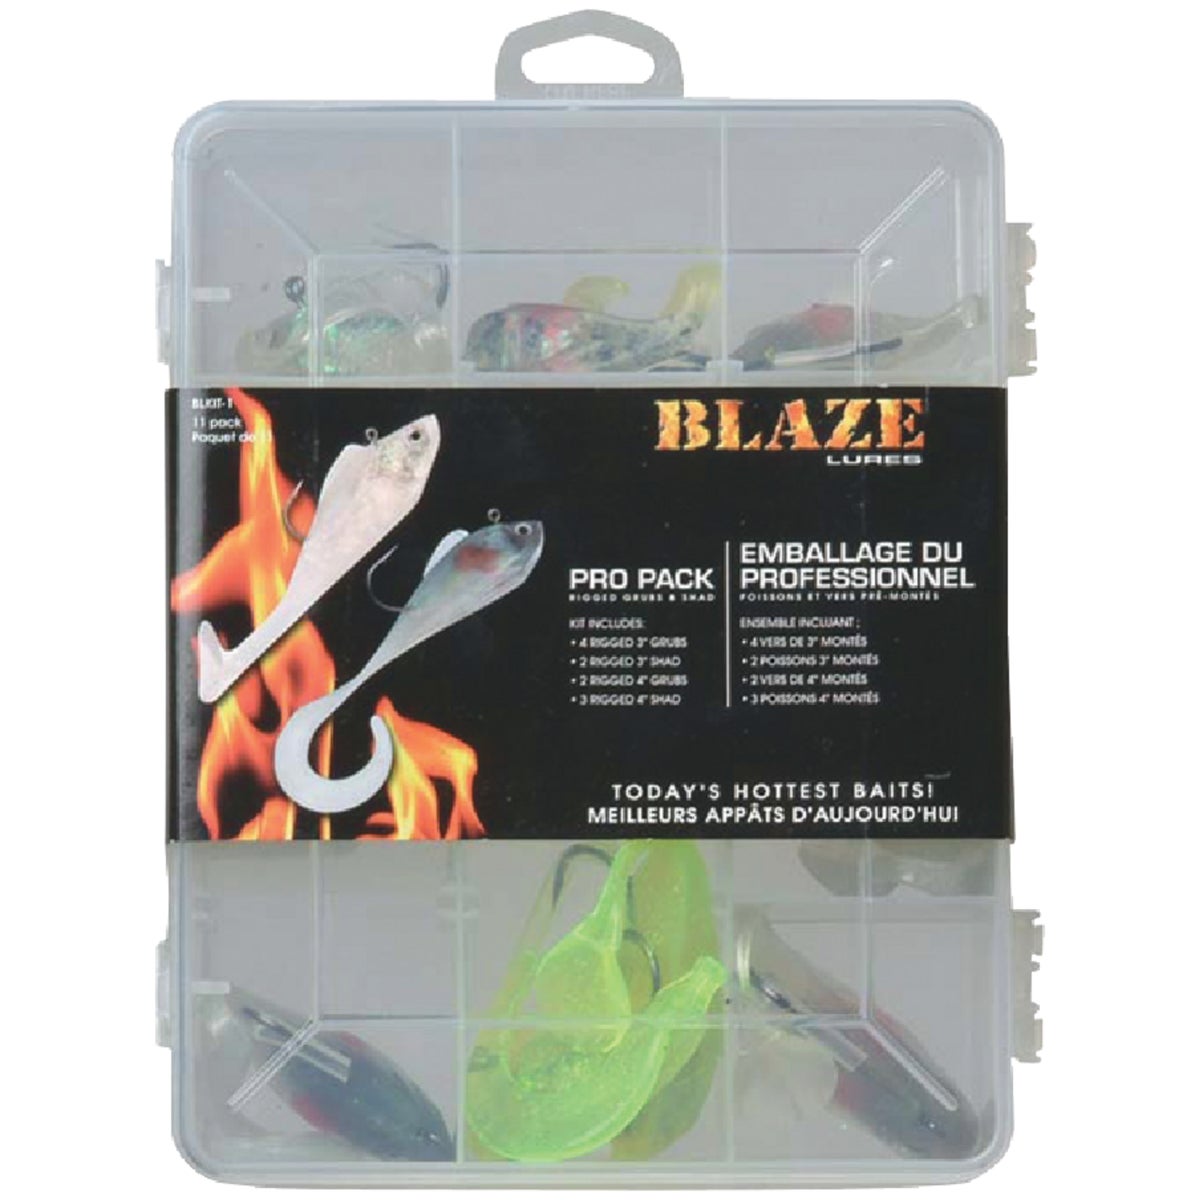 Item 810974, Blaze pro pack lure kit.